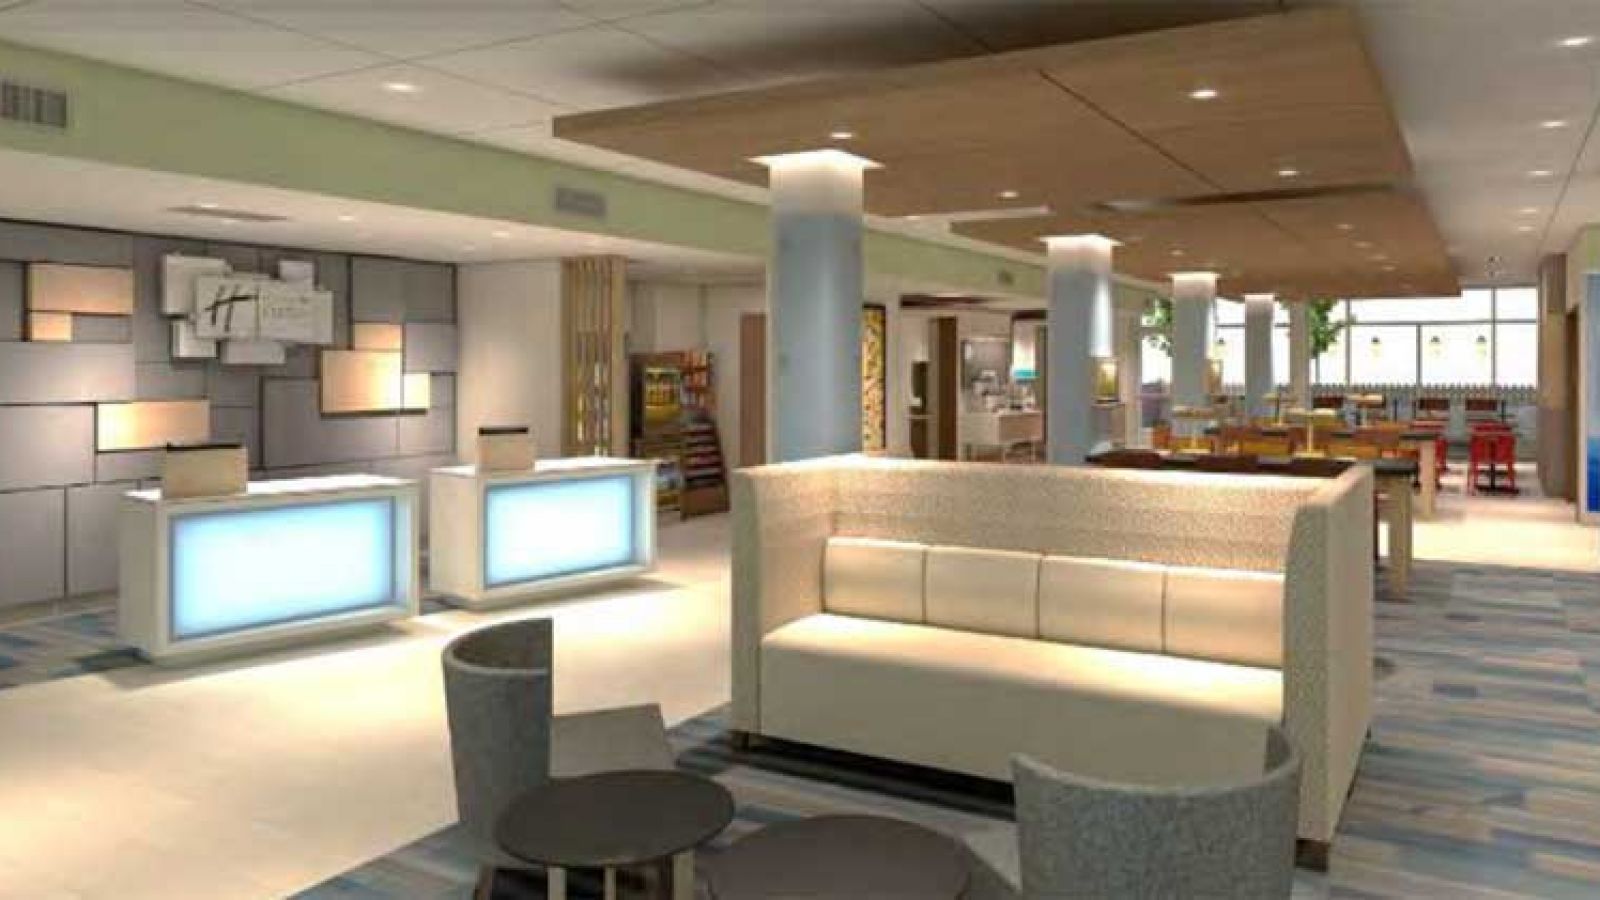 New Holiday Inn Express Kelowna - lobby area